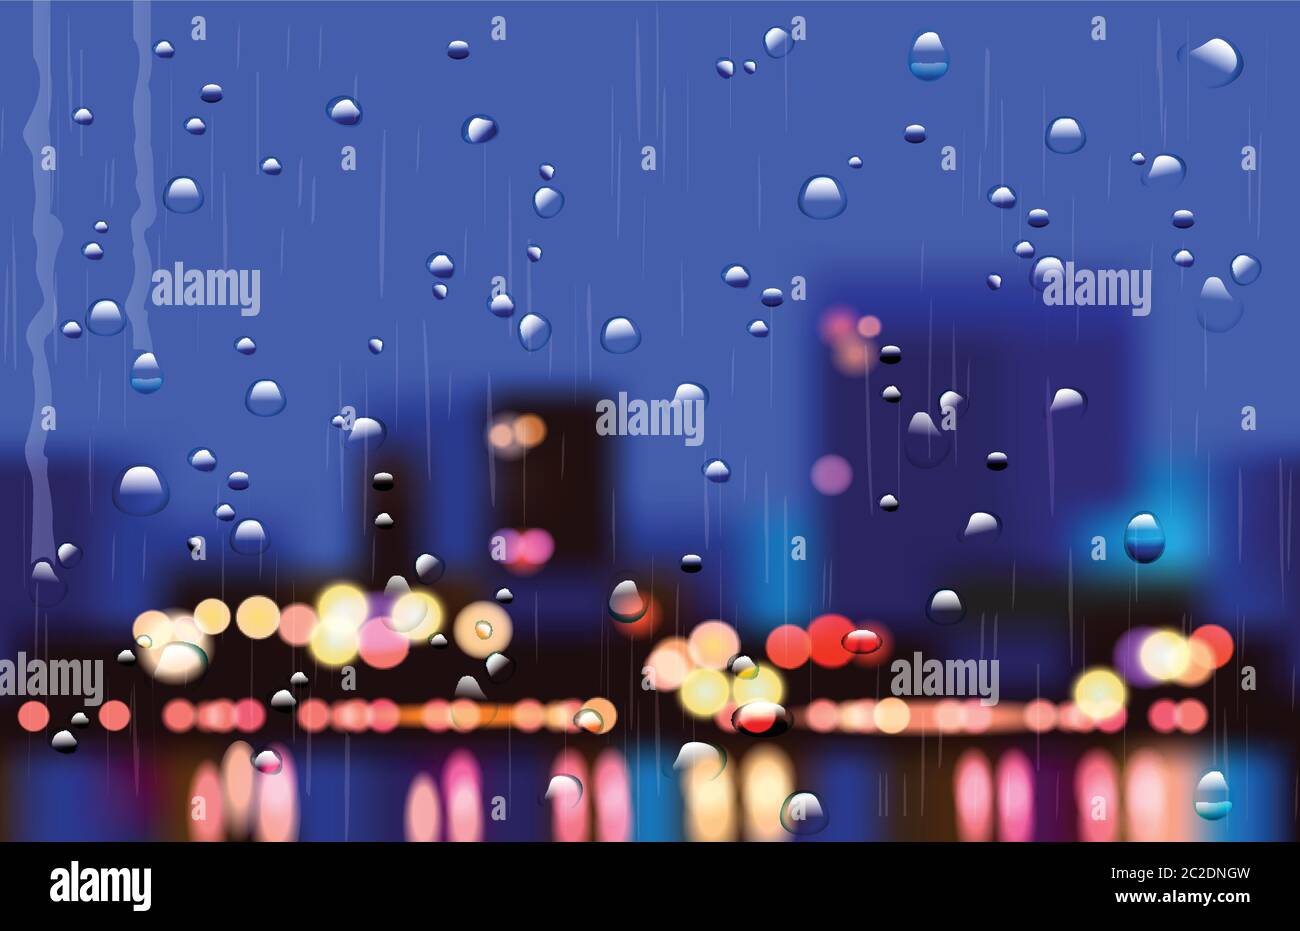 Realistische Vektor-Illustration von regnerischen Stadtstraßen mit Bokeh. Kann in Ihrem Design als Hintergrund oder ein Teil der Komposition verwendet werden. Schichten für EA Stock Vektor